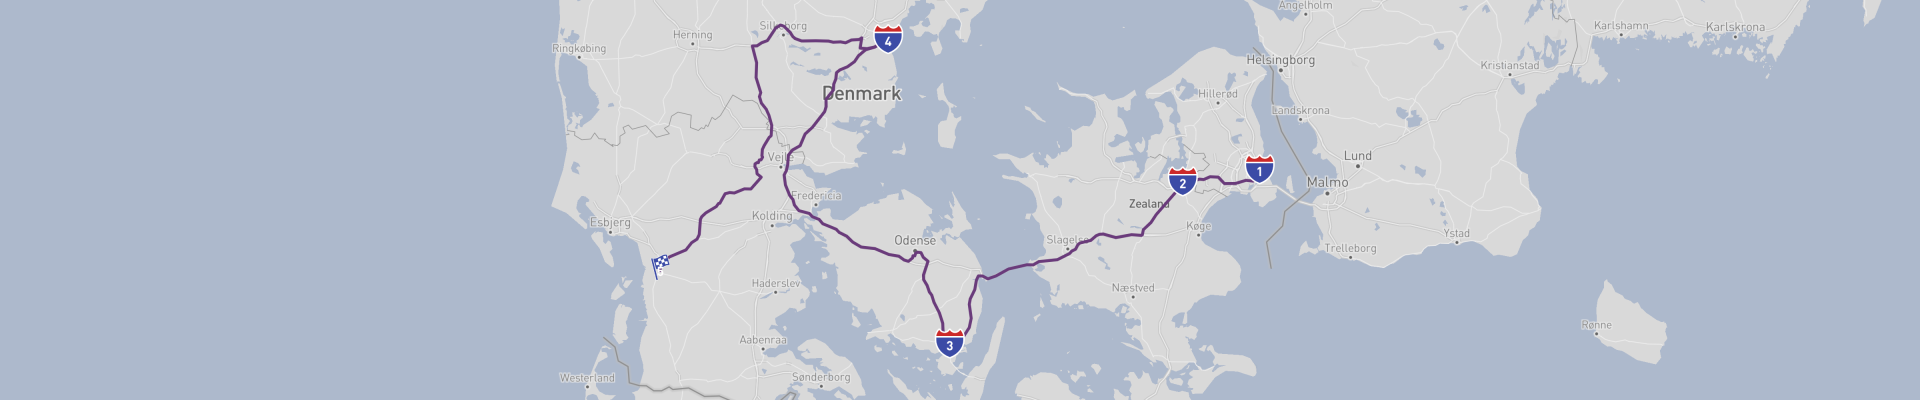 Viaje por carretera del Báltico al Mar del Norte